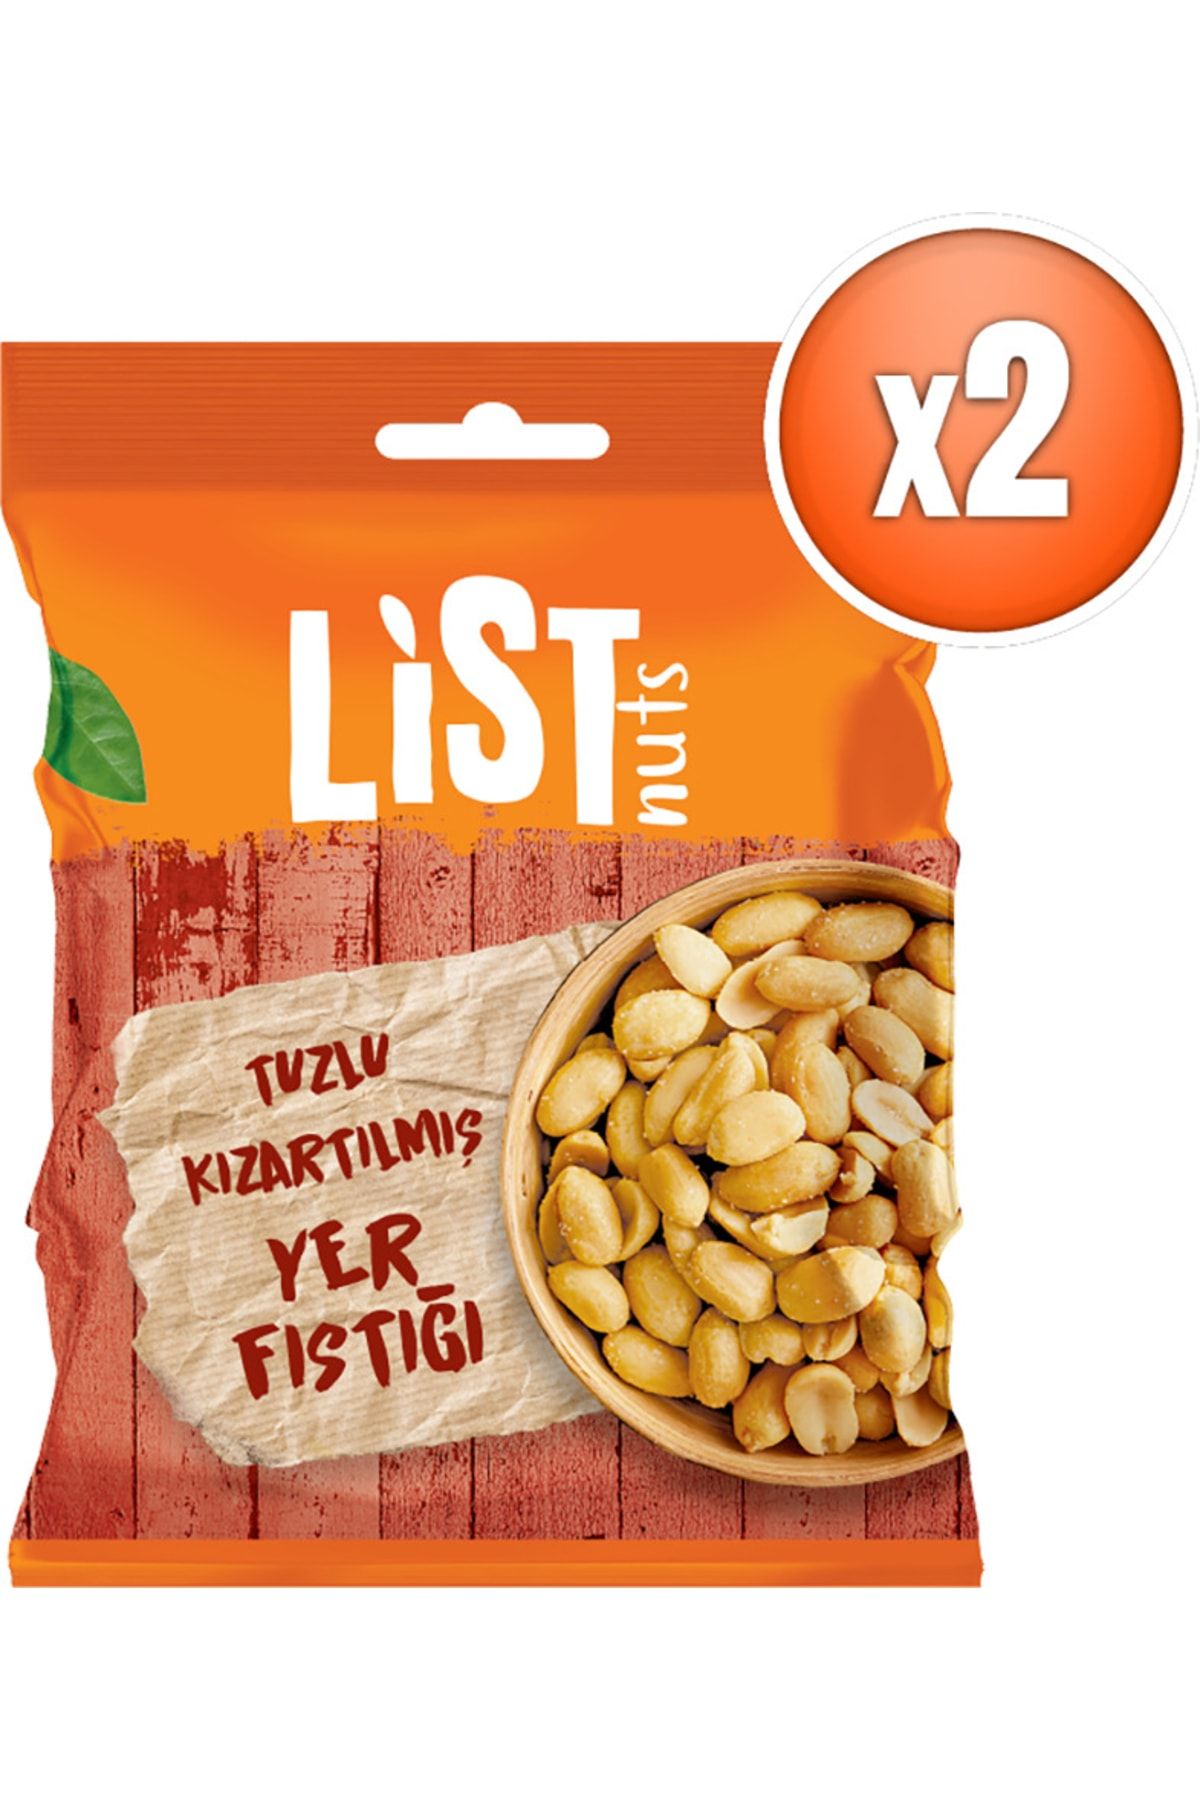 List Nuts Kızarmış Yer Fıstığı 2 X 150 G